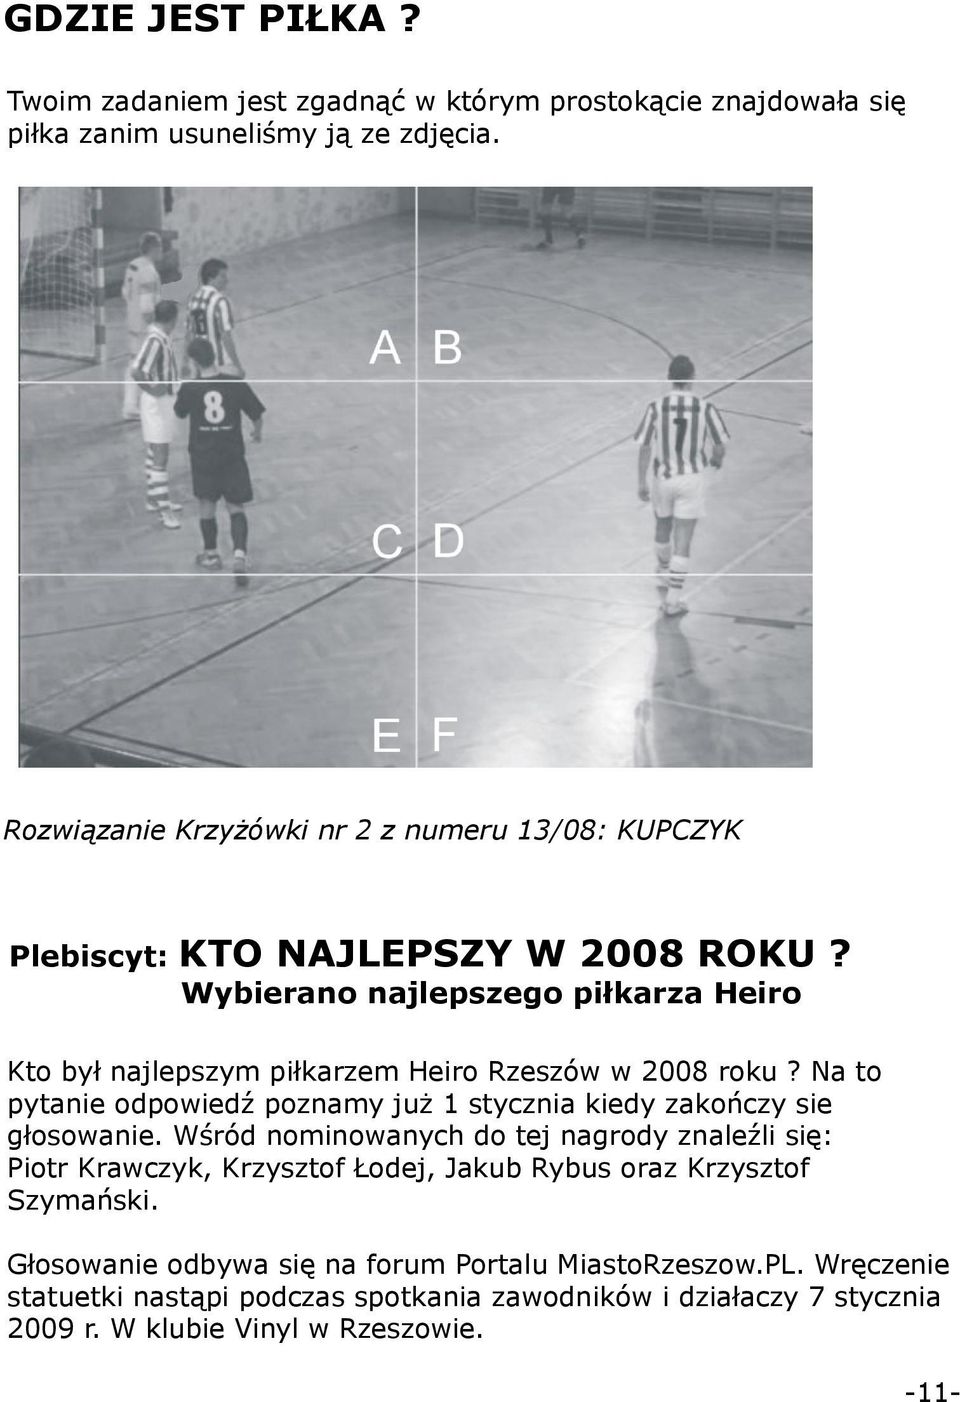 Wybierano najlepszego piłkarza Heiro Kto był najlepszym piłkarzem Heiro Rzeszów w 2008 roku? Na to pytanie odpowiedź poznamy już stycznia kiedy zakończy sie głosowanie.